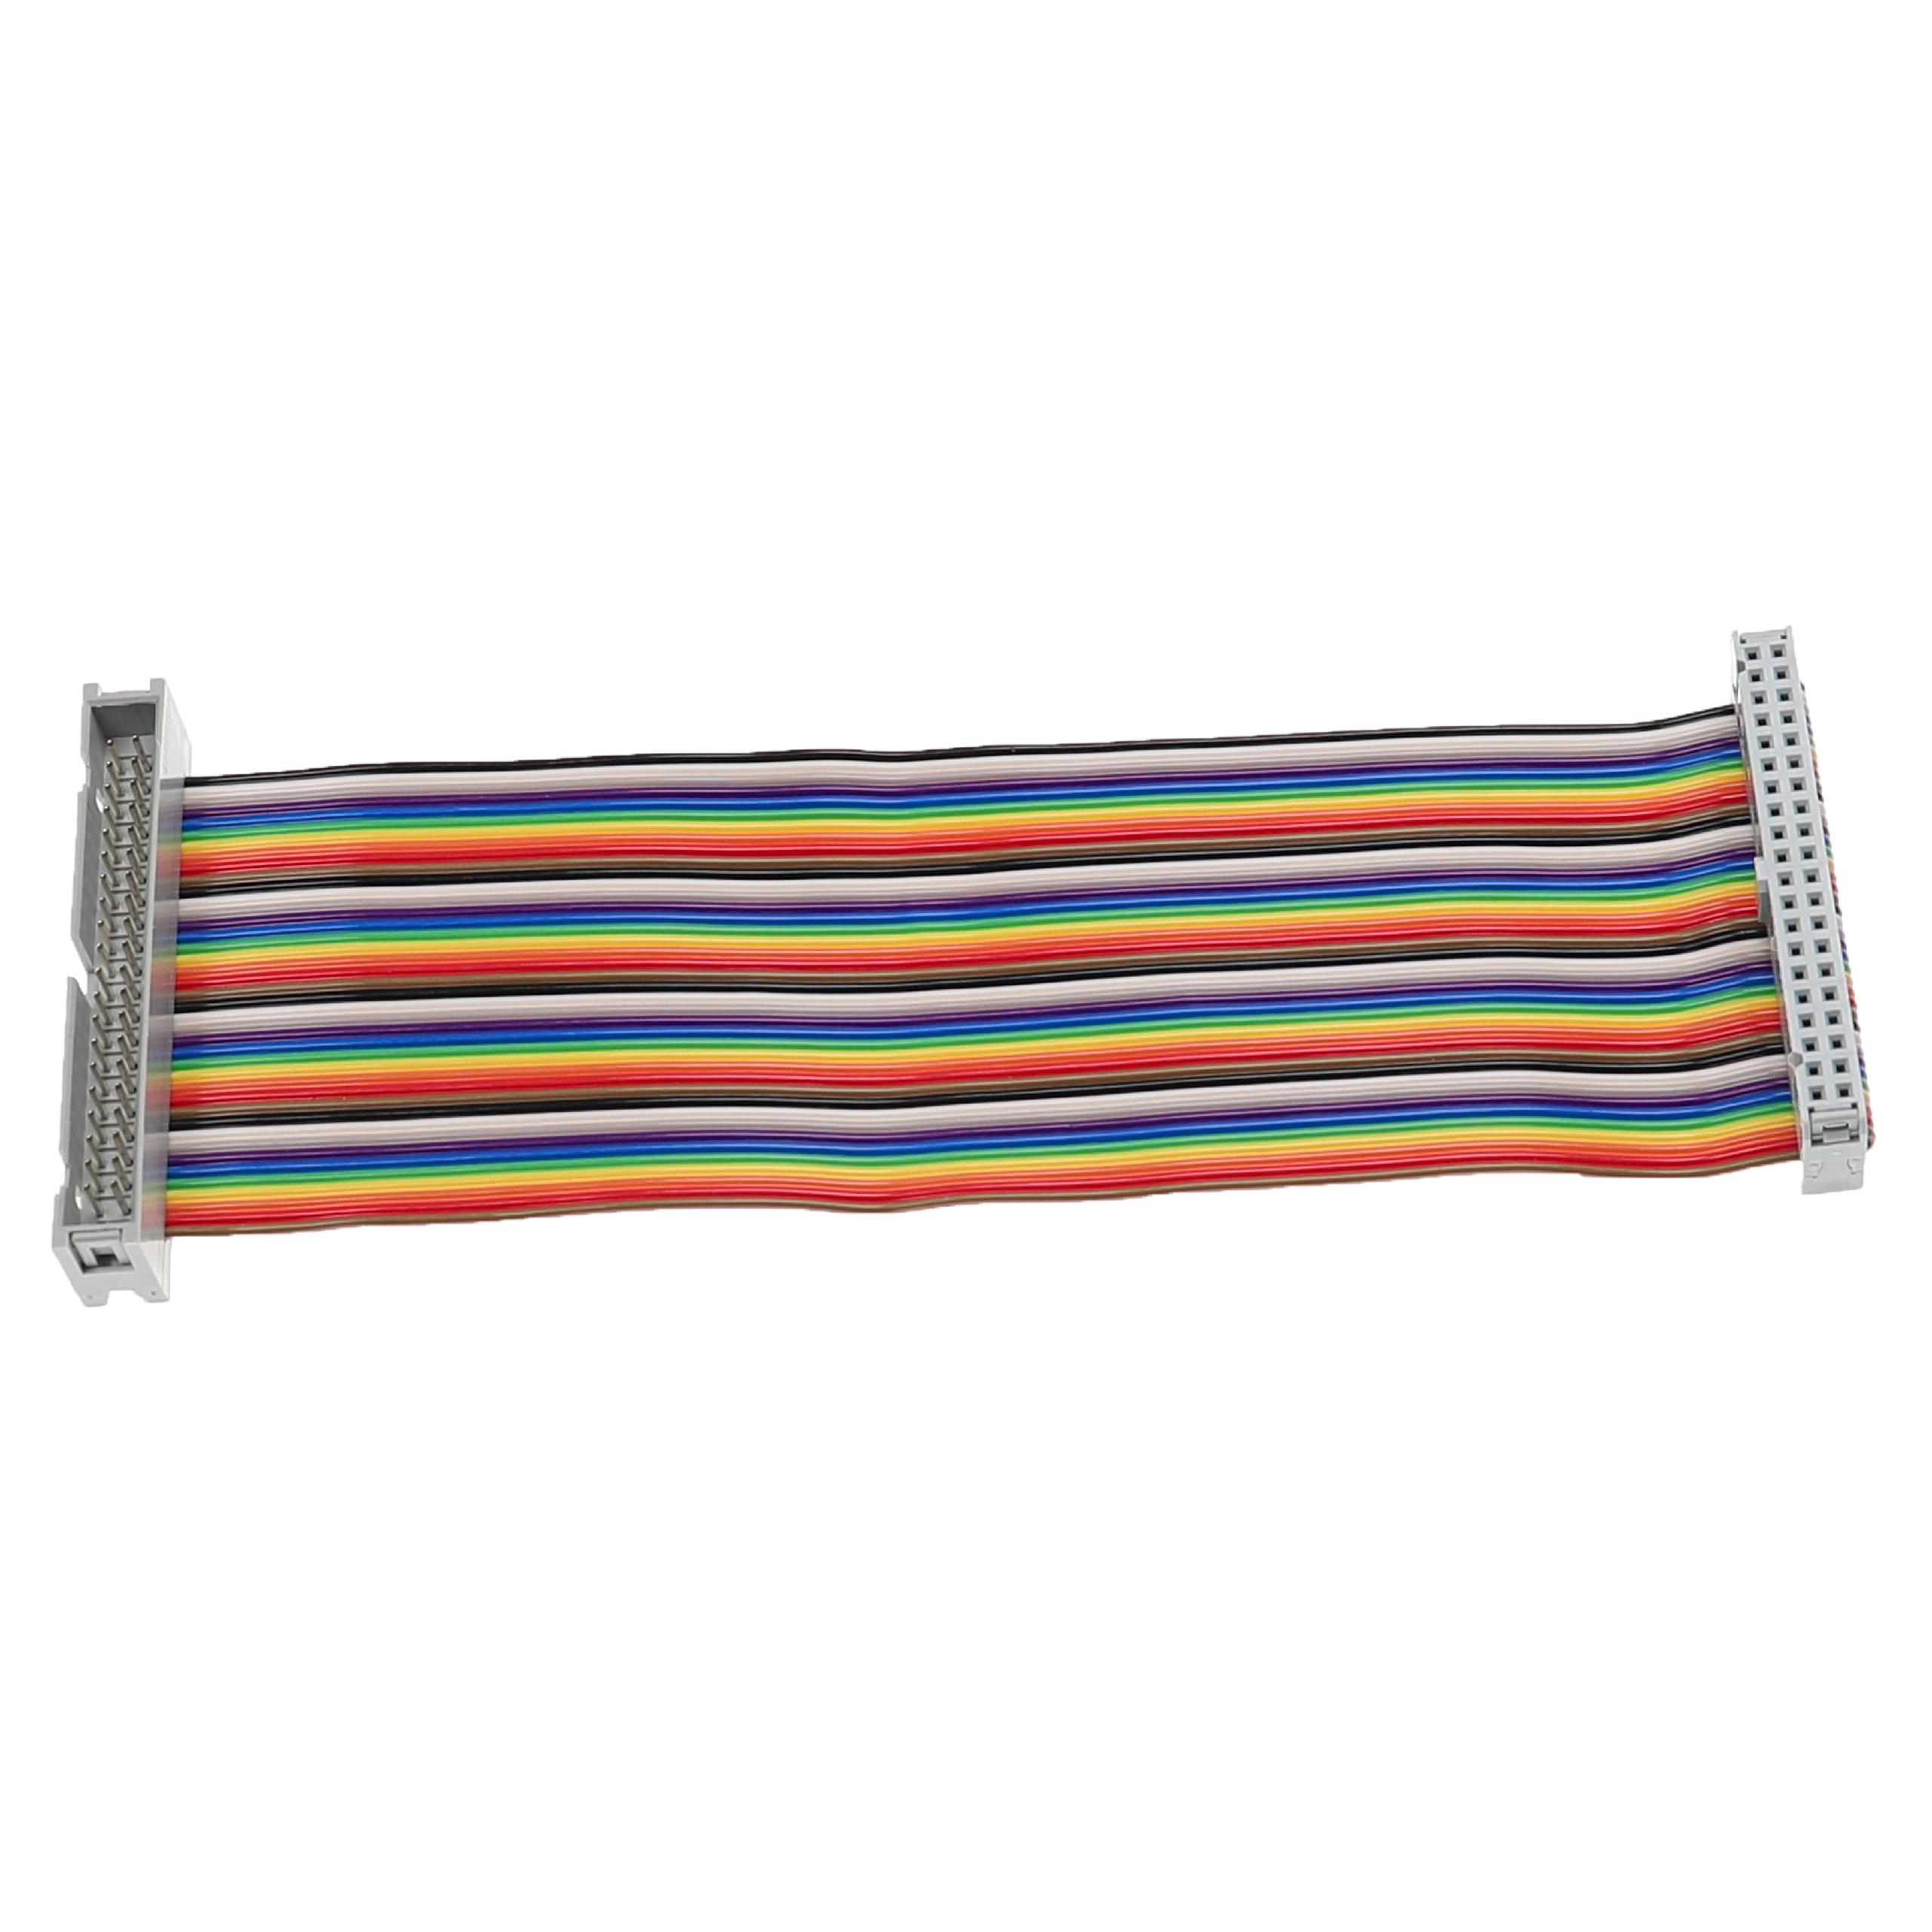 Cable GPIO 40 pines compatible con Raspberry Pi miniordenador - Cable alargador GPIO multicolor, 15 cm